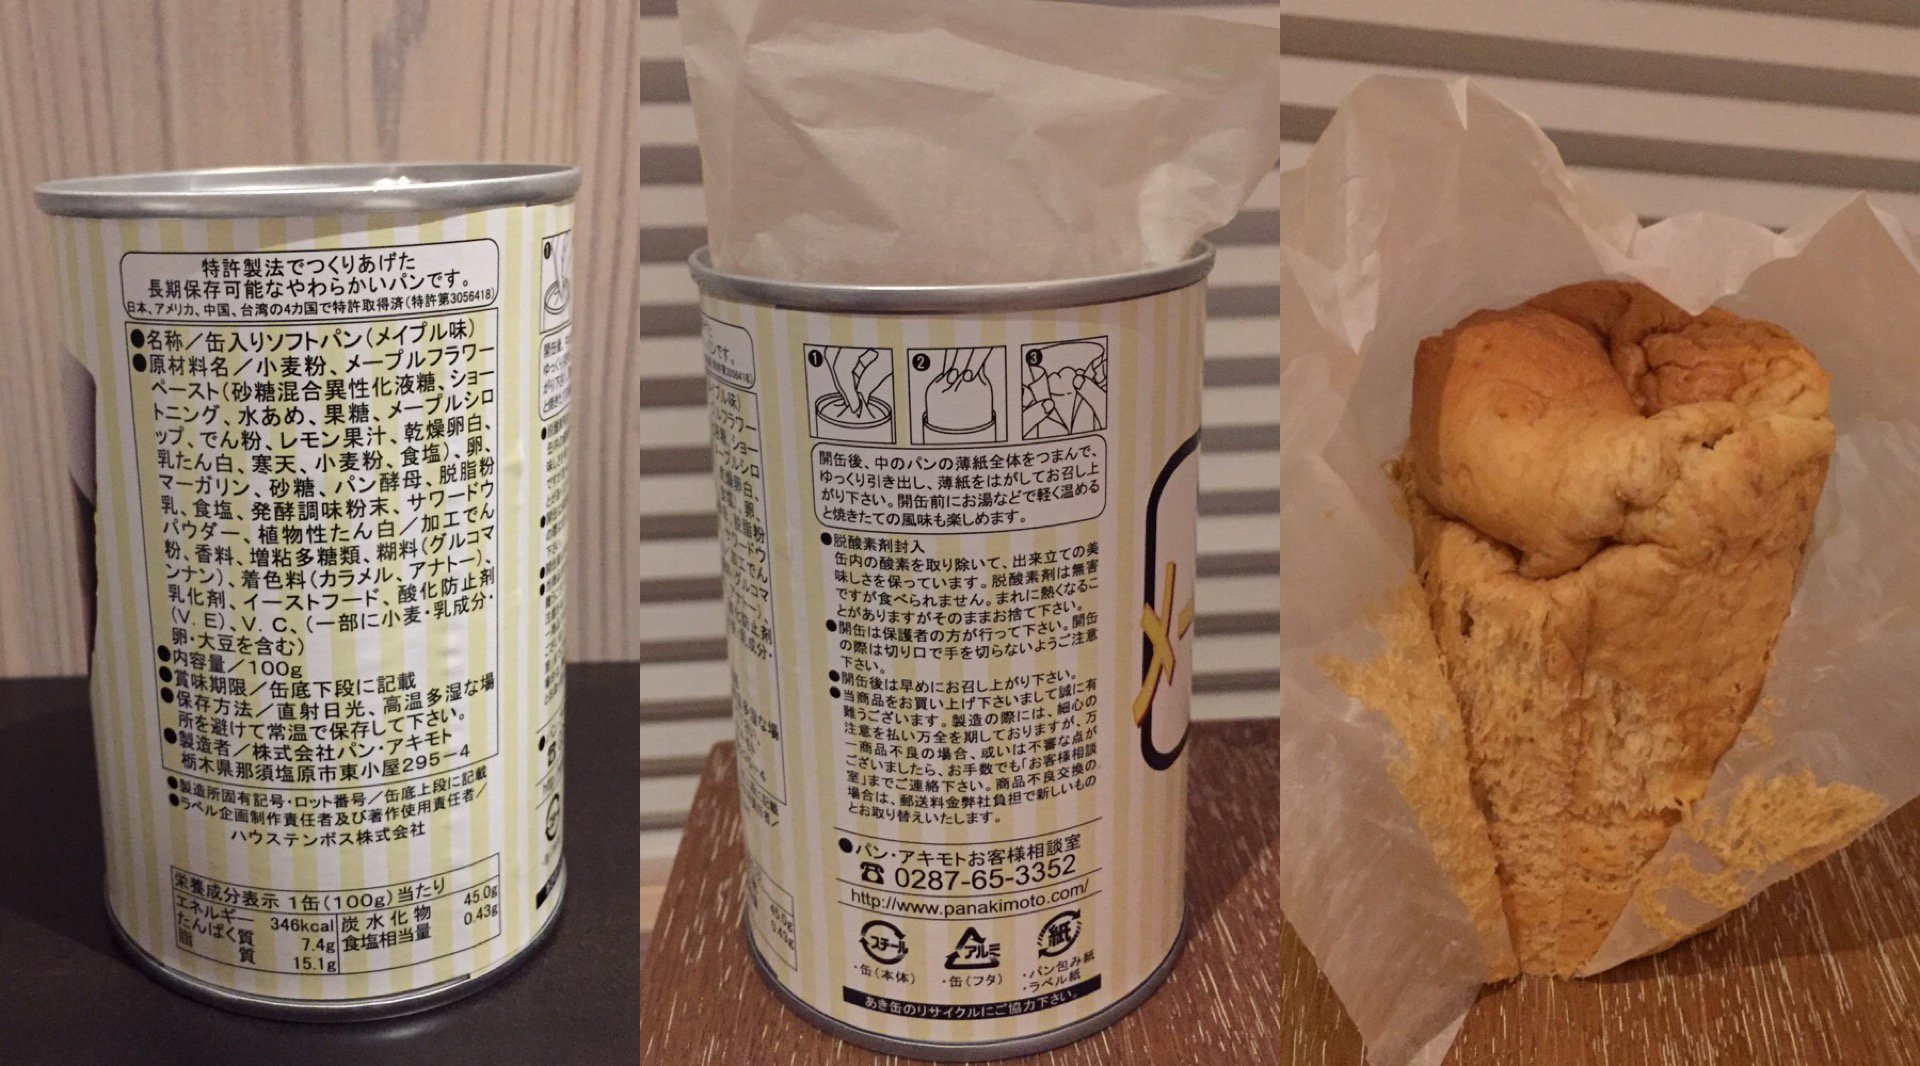 メープルパン、わりと美味い。 (@ 変なホテル in 佐世保市, 長崎県)  